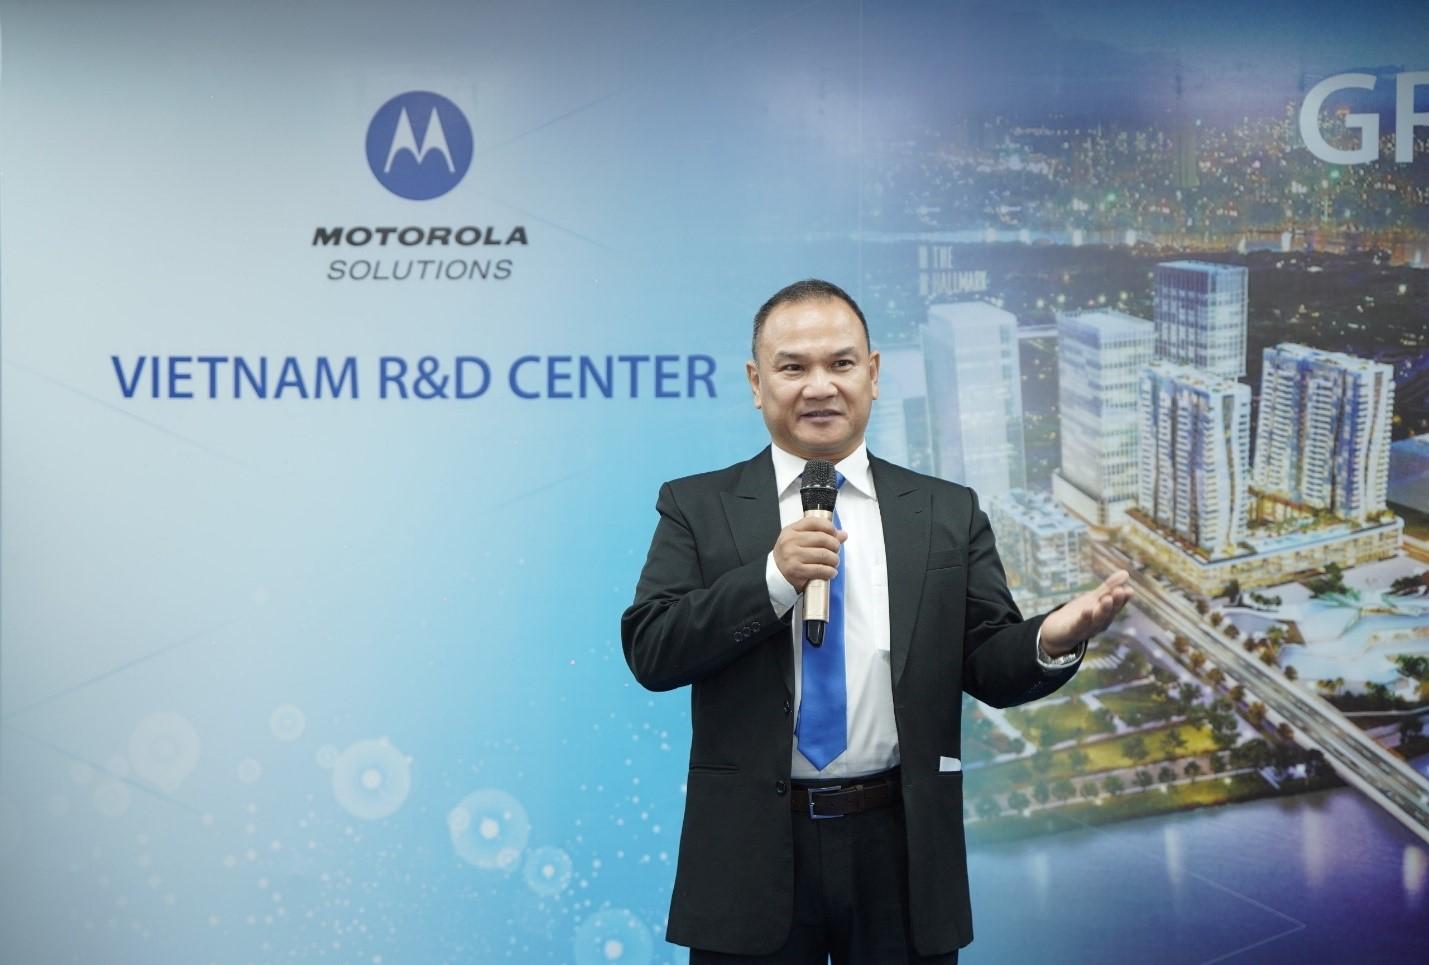 Ông Đinh Tiến Sơn, Giám đốc điều hành kiêm Giám đốc Khoa học của Trung tâm Nghiên cứu và Phát triển Motorola Solutions Việt Nam